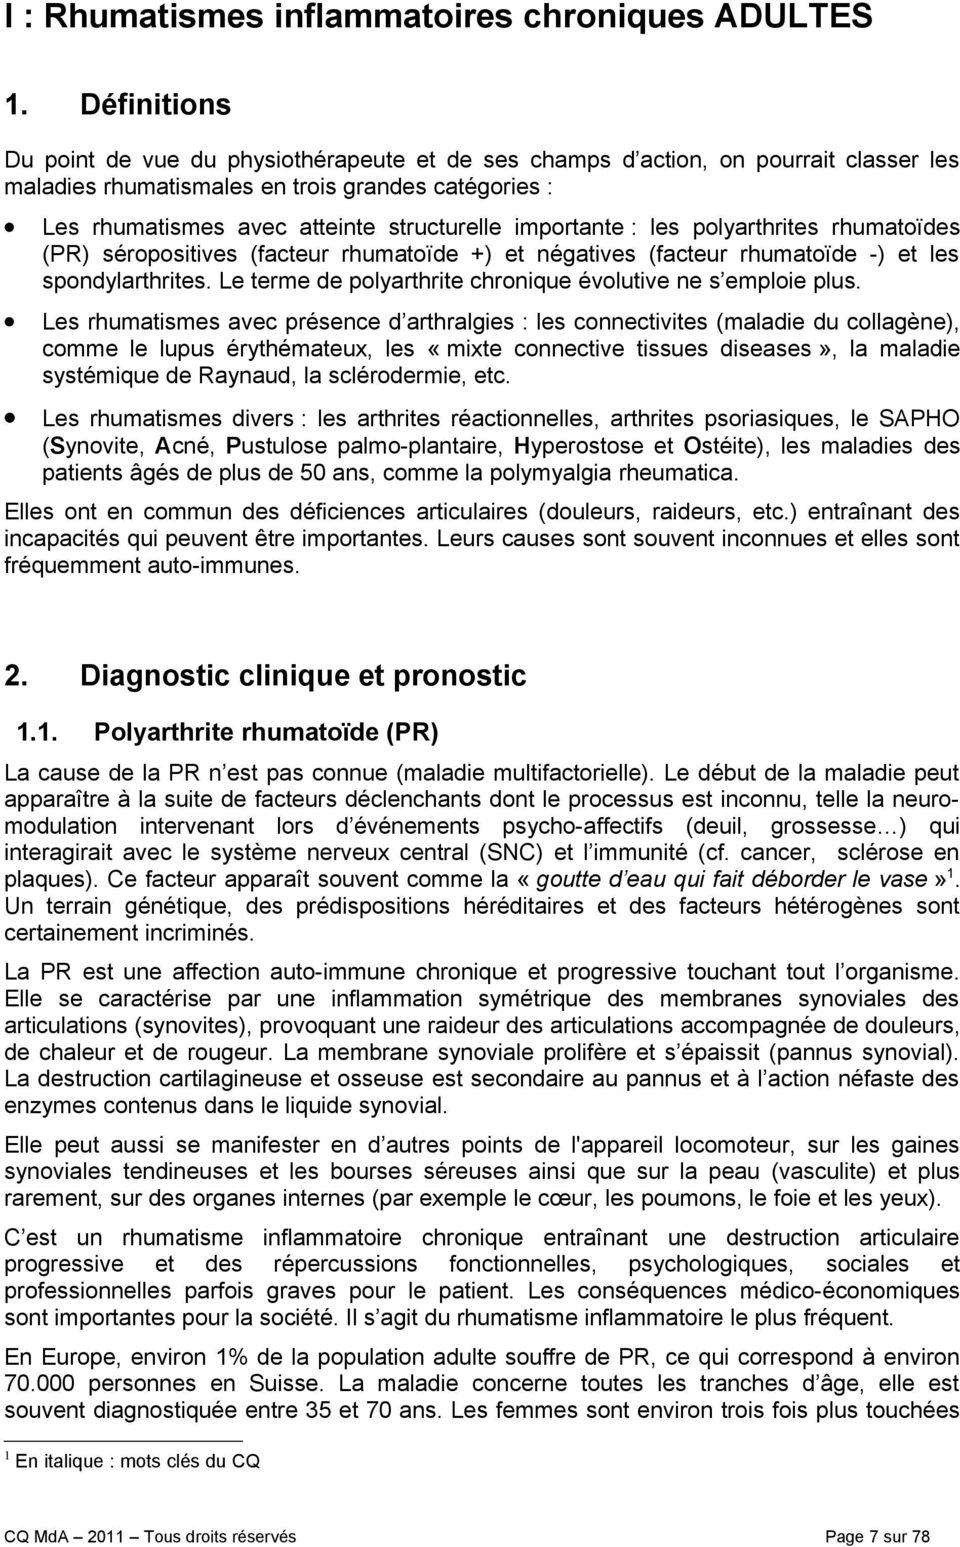 importante : les polyarthrites rhumatoïdes (PR) séropositives (facteur rhumatoïde +) et négatives (facteur rhumatoïde -) et les spondylarthrites.